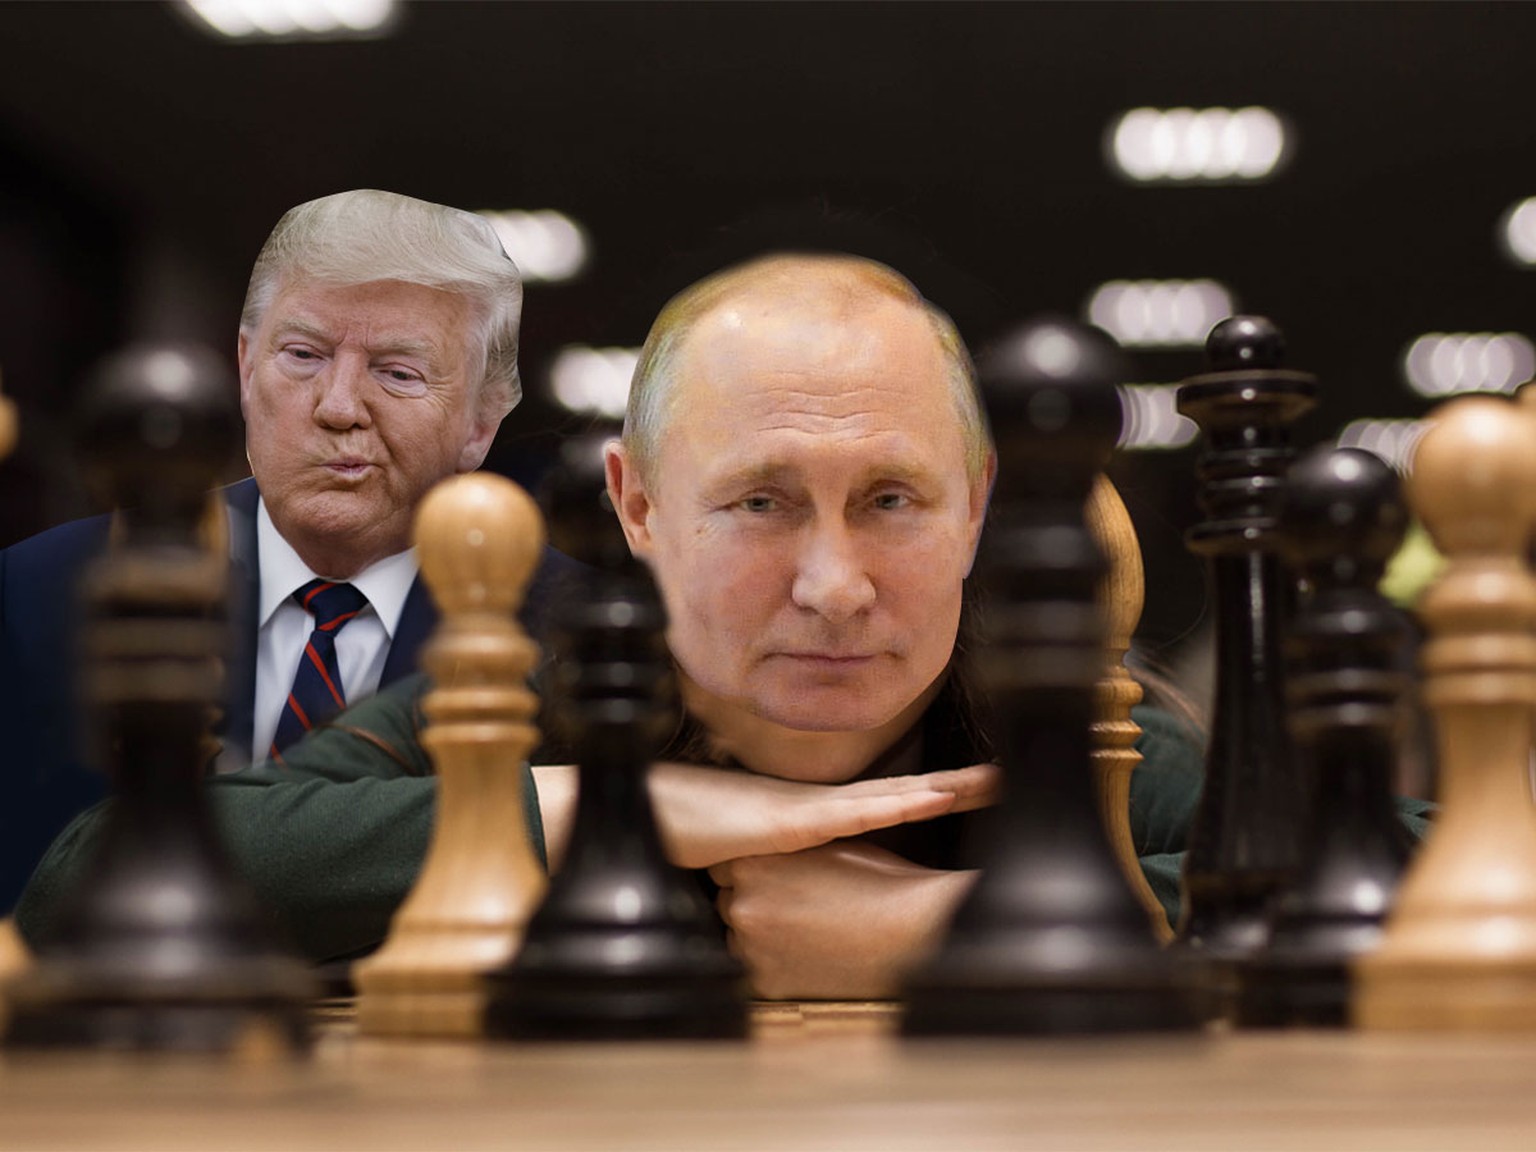 Trump und Putin beim Schach